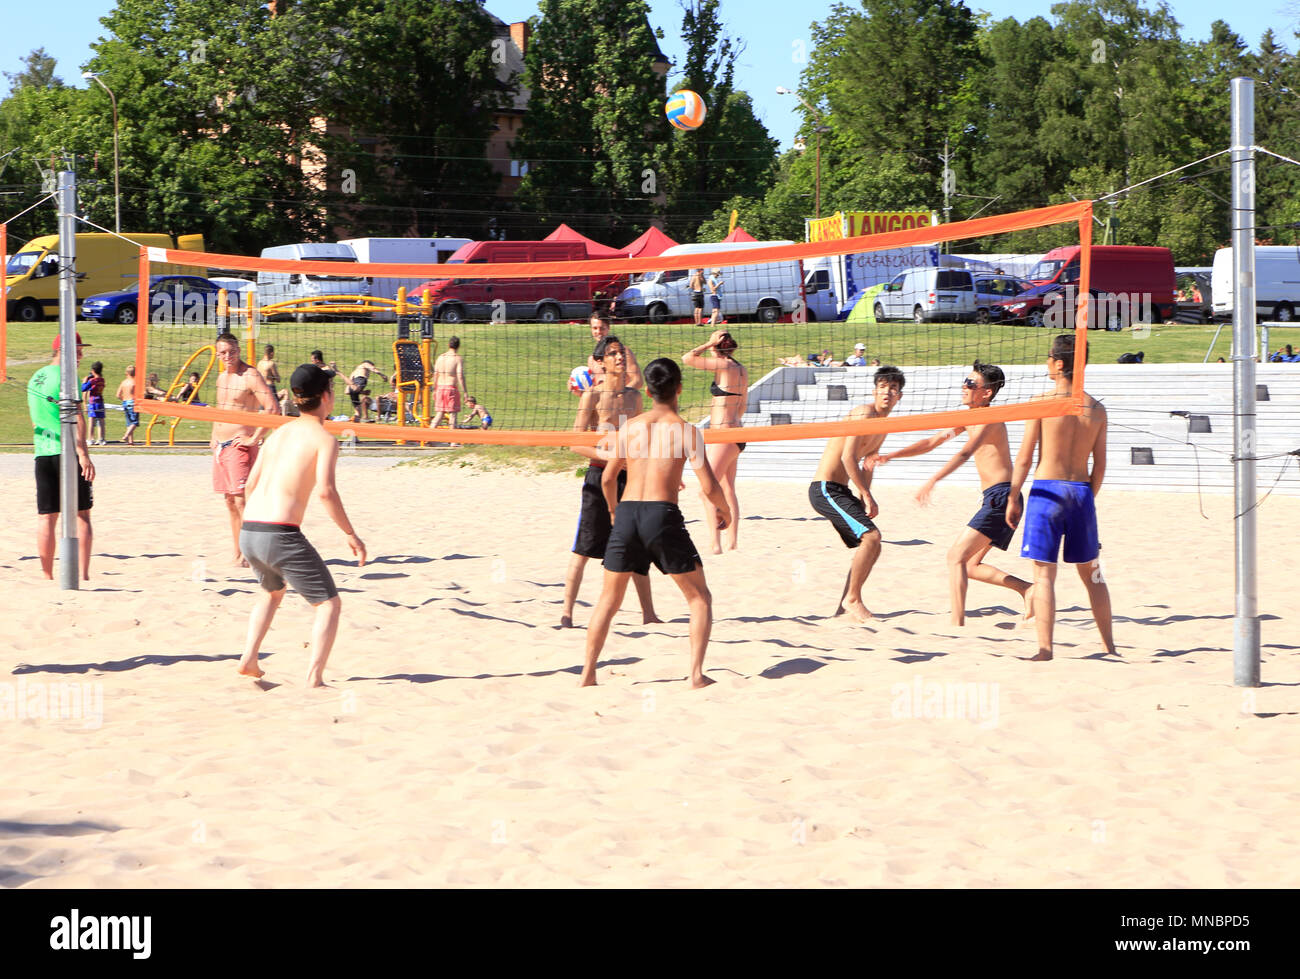 Vasteras, Schweden - 3. Juli 2015: Spontane jugendliche Beachvolleyball am Strand Logarangen. Stockfoto